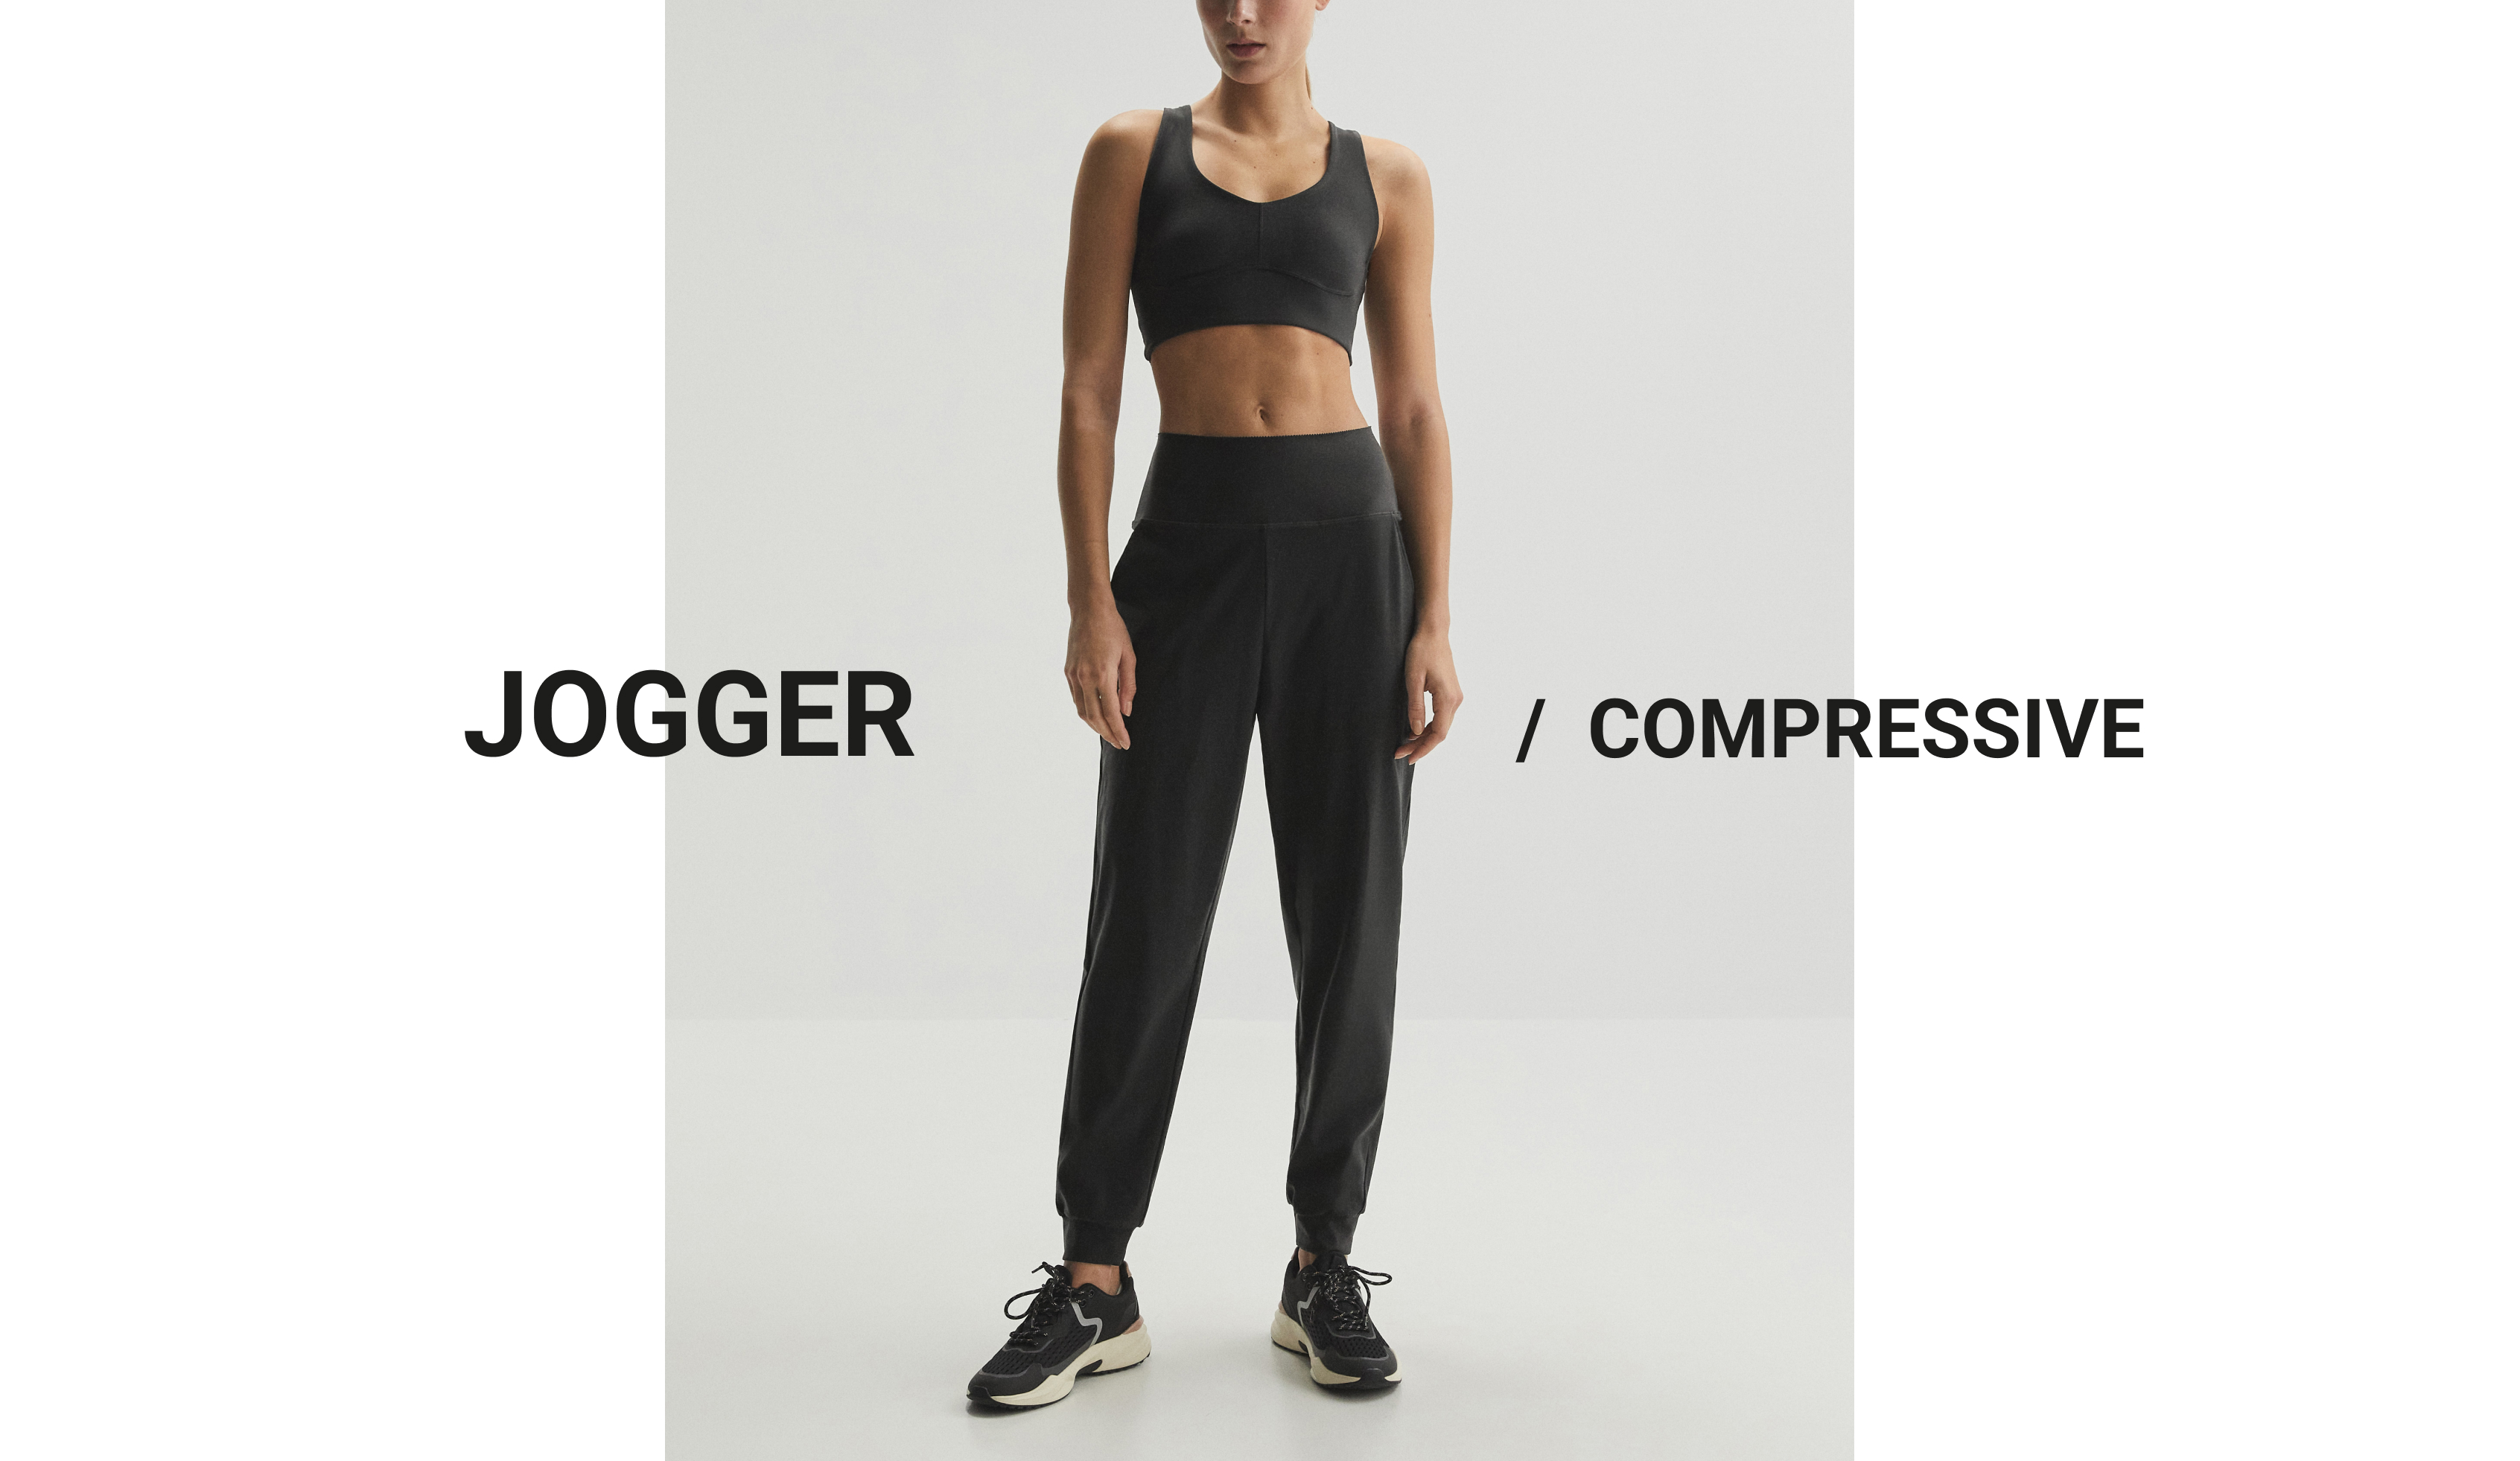 Compressive joggingbroek